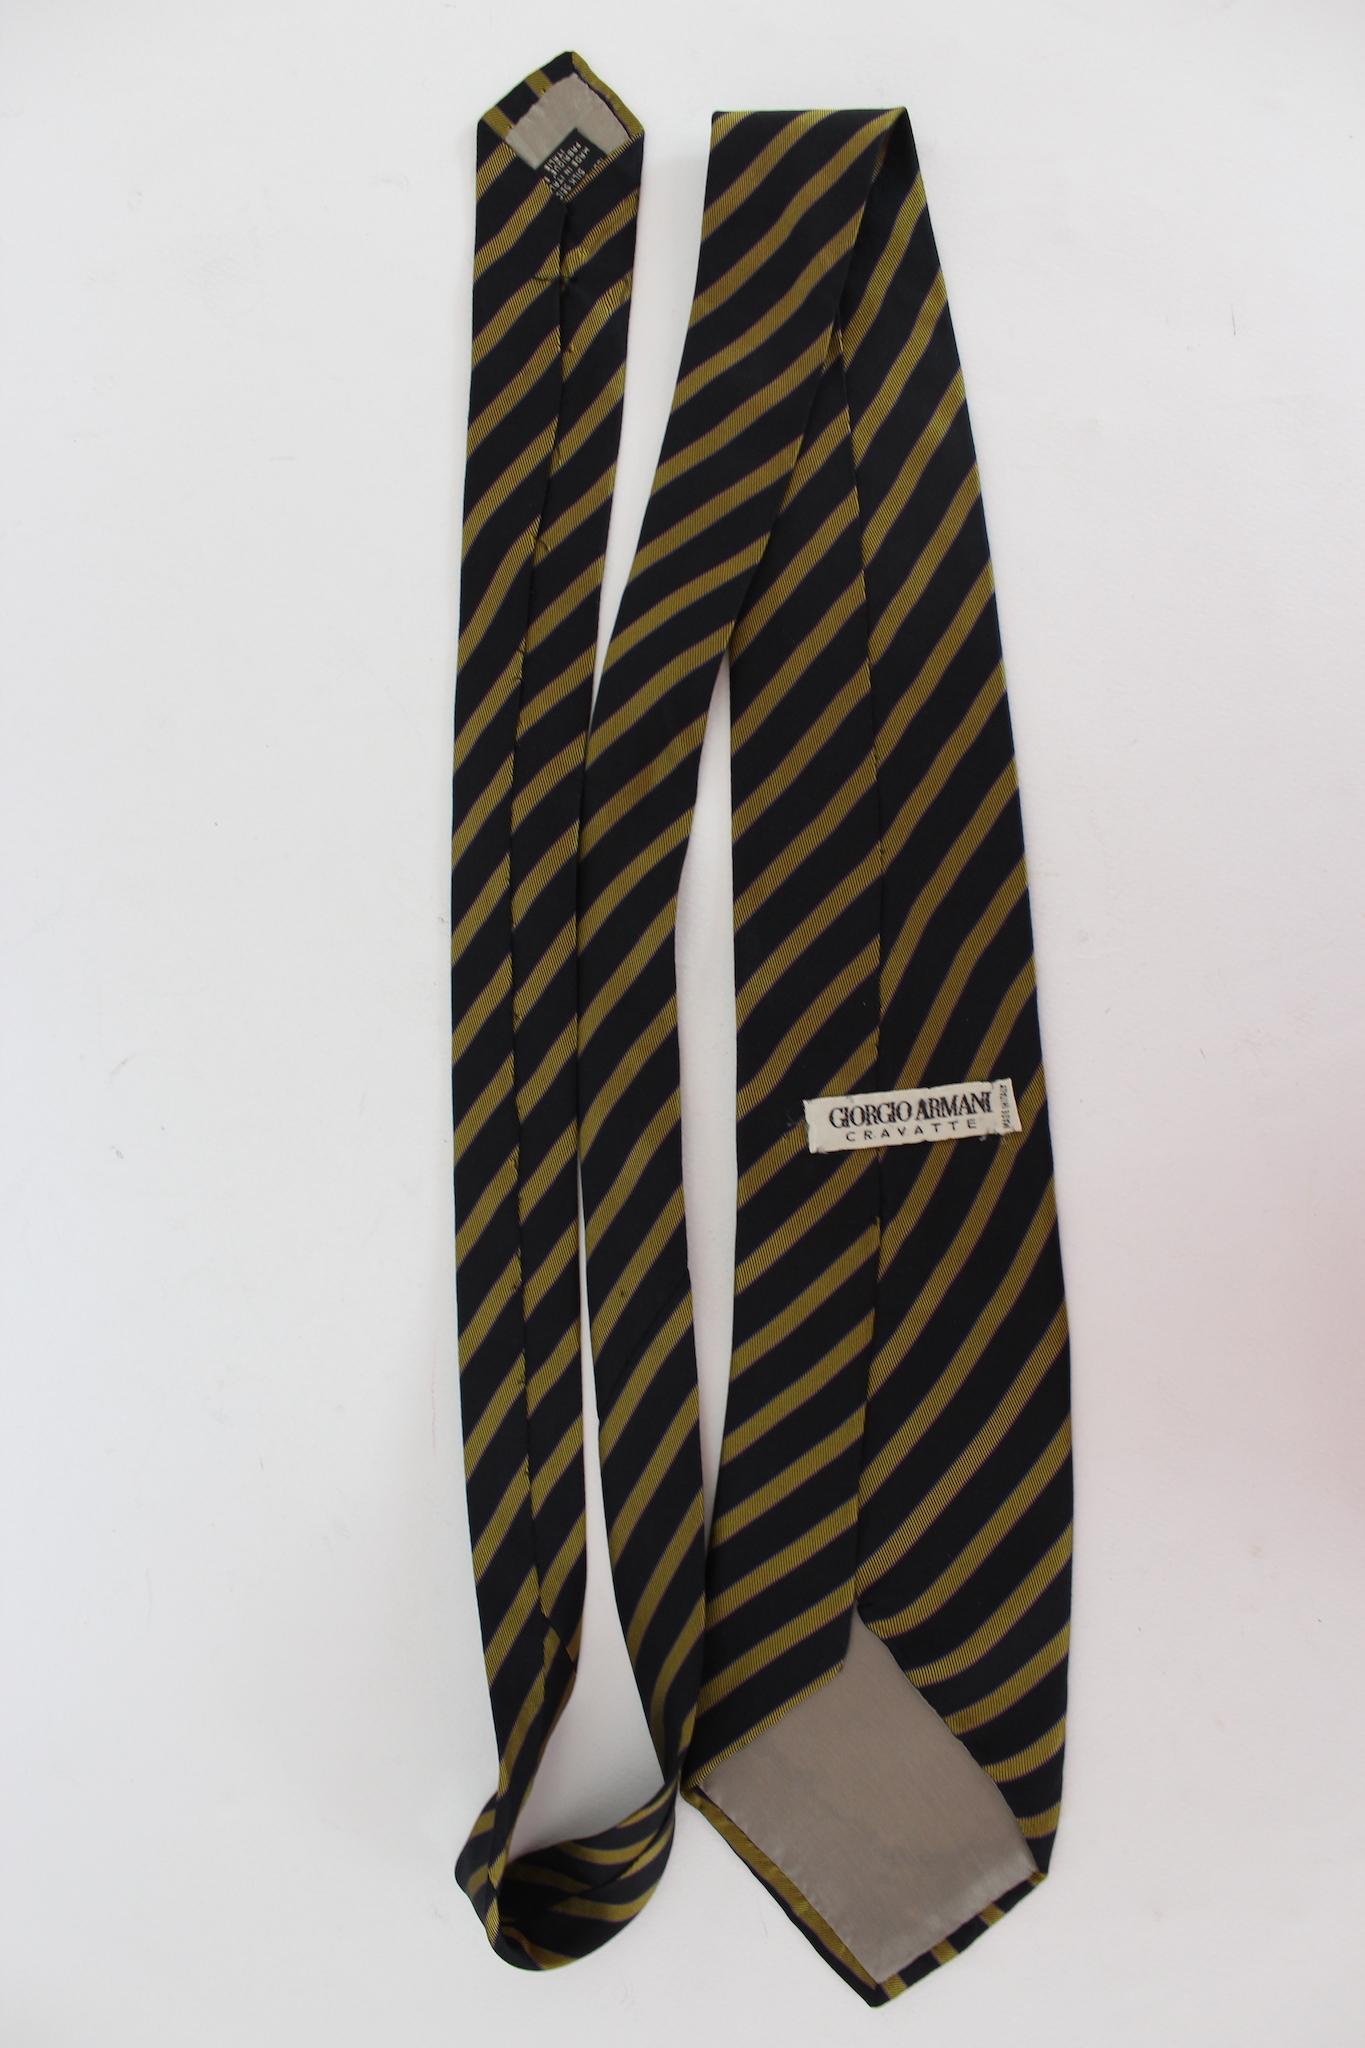 Cravate vintage Giorgio Armani des années 2000. Bleu et jaune, motif rayé. Tissu 100 % soie. Fabriquées en Italie.

Longueur : 150 cm
Largeur : 9 cm